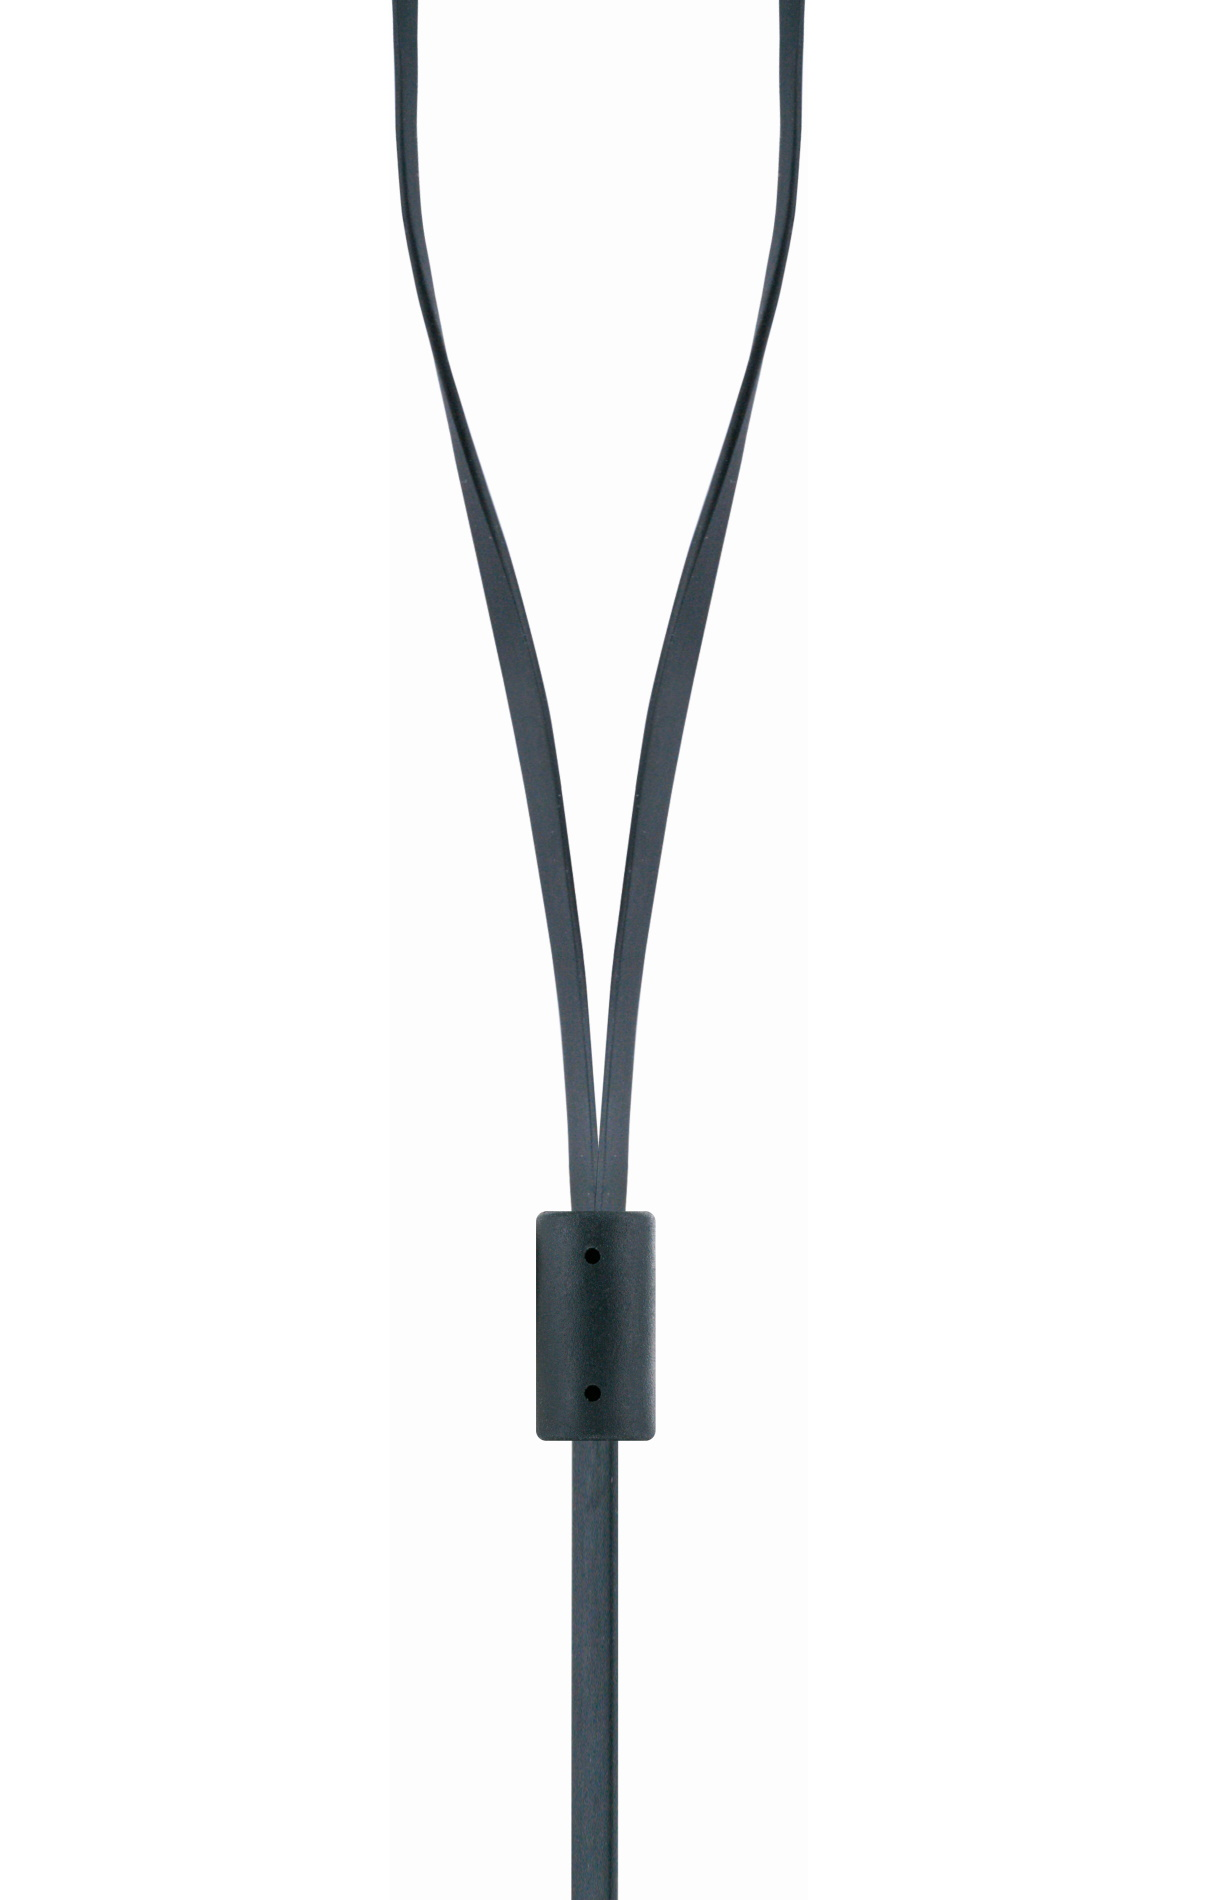 Slimkabel integriertem In-ear und SCHWAIGER Kopfhörer mit Mikrofon Schwarz -KH470S 513-,